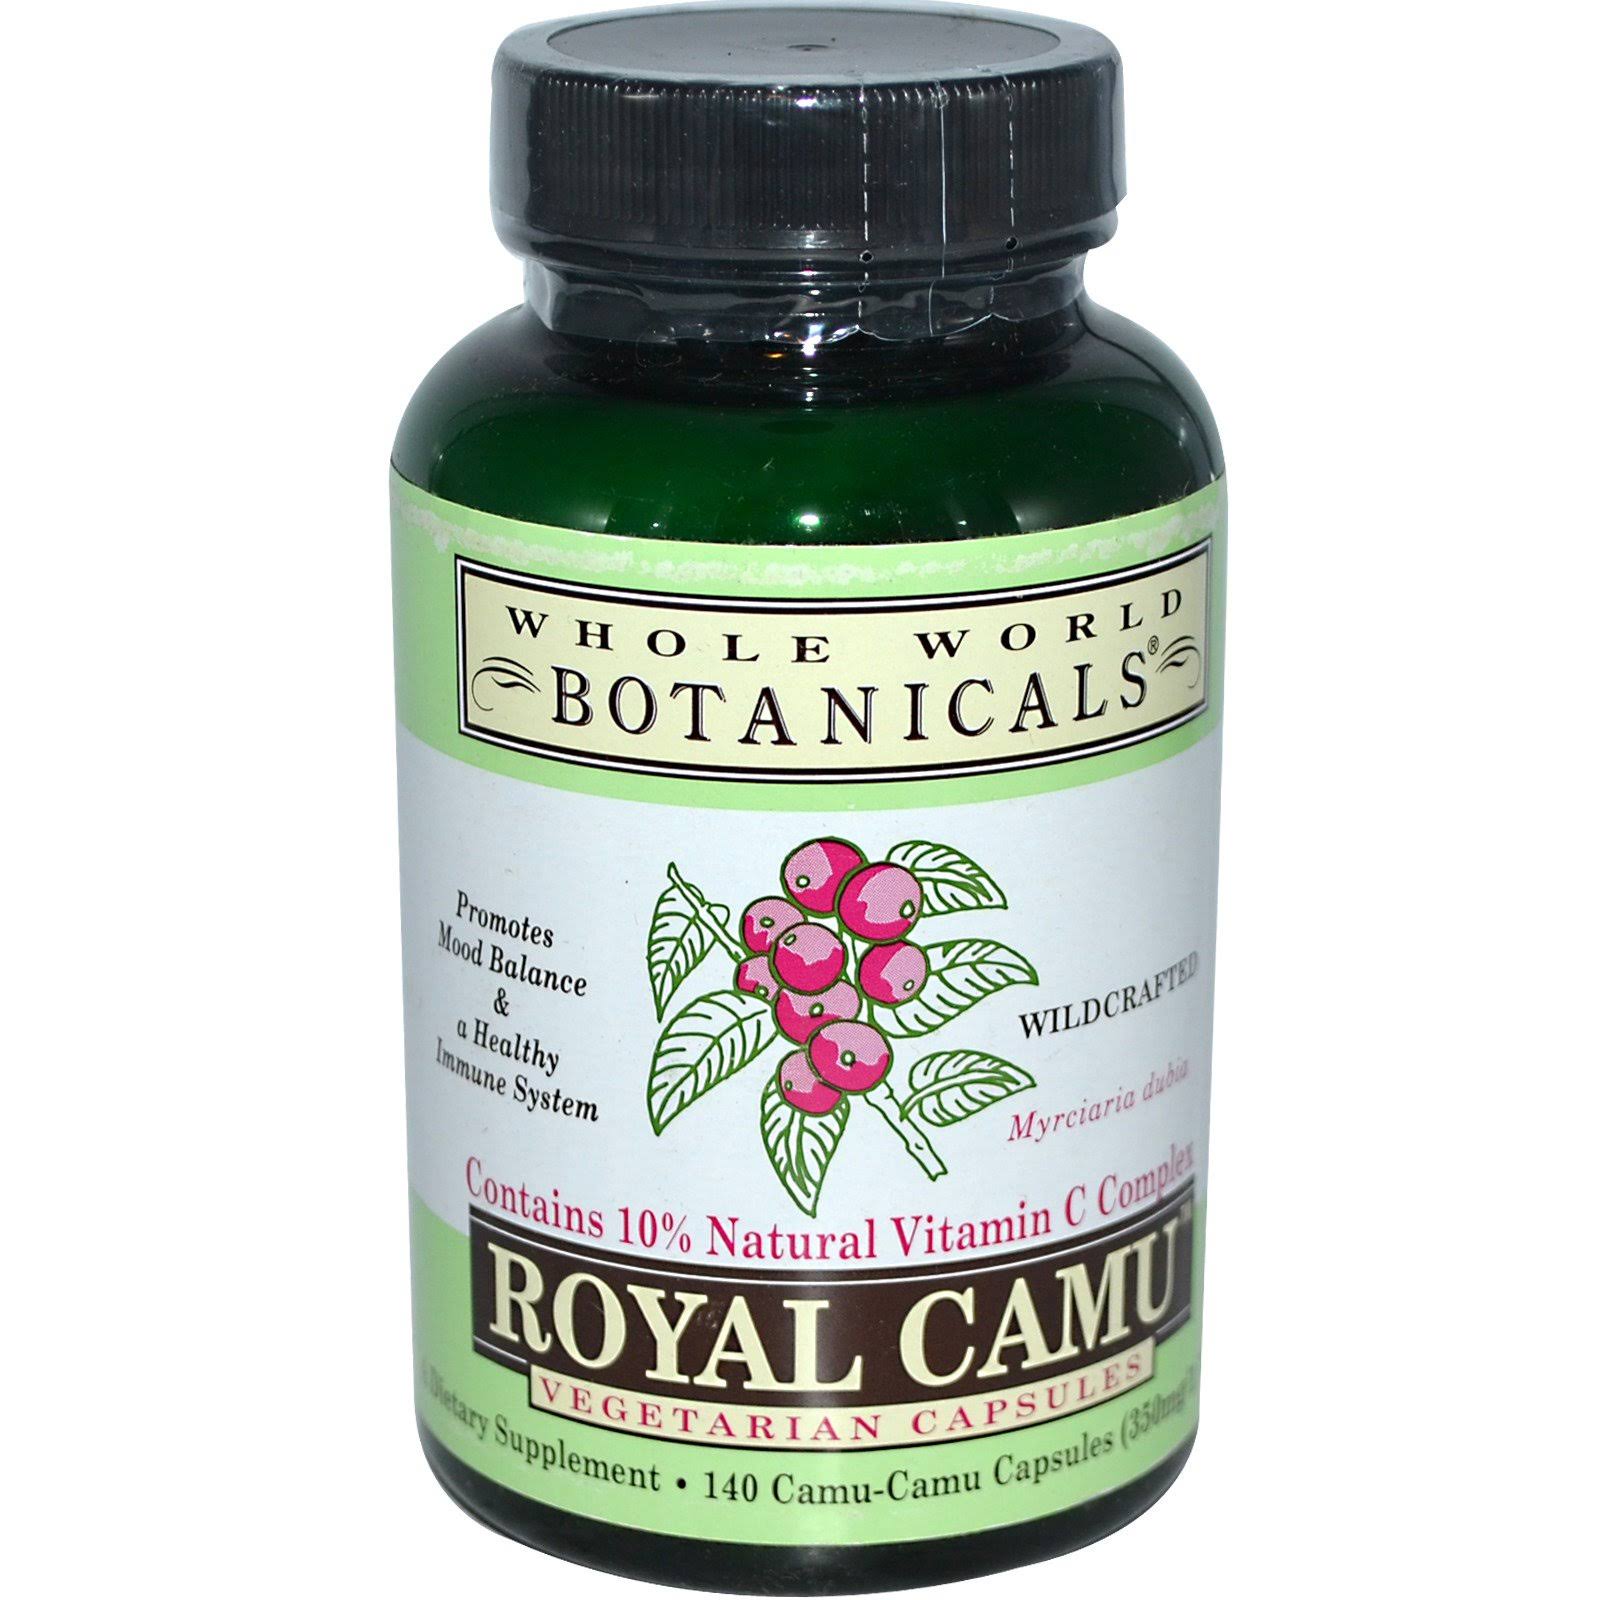 Whole World Botanicals Royal Camu - 140 Vegetarian Capsules